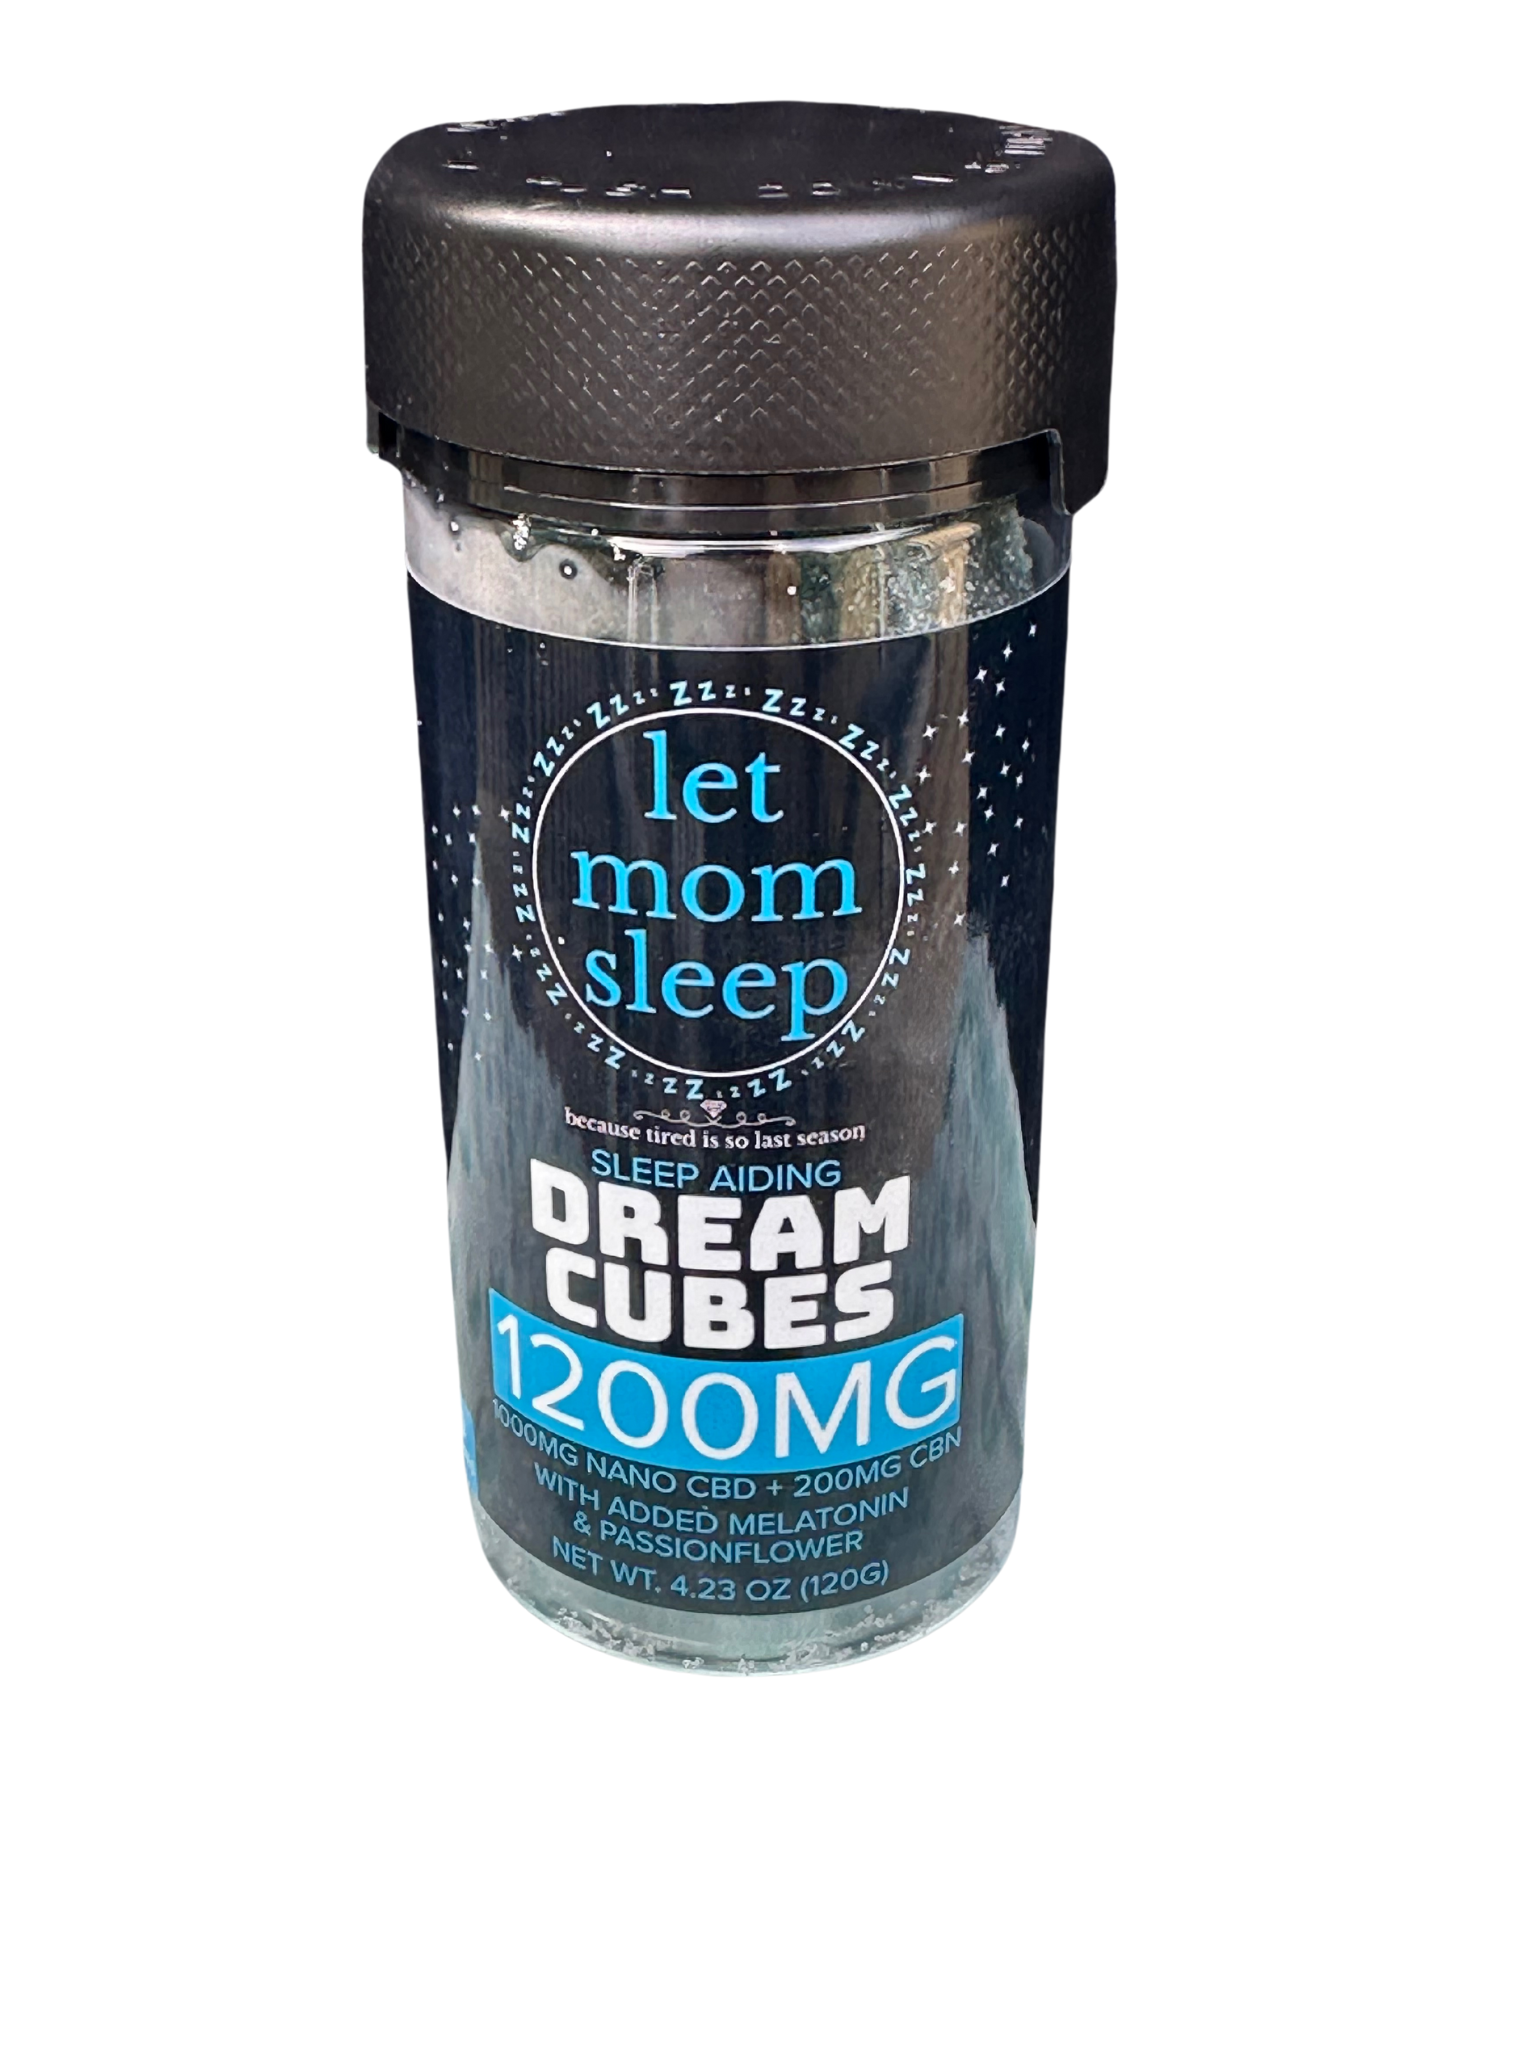 Let Mom Sleep - Bedtime Betty - Dream Cubes Meletonin, Passionflower, Nano CBD, and CBN